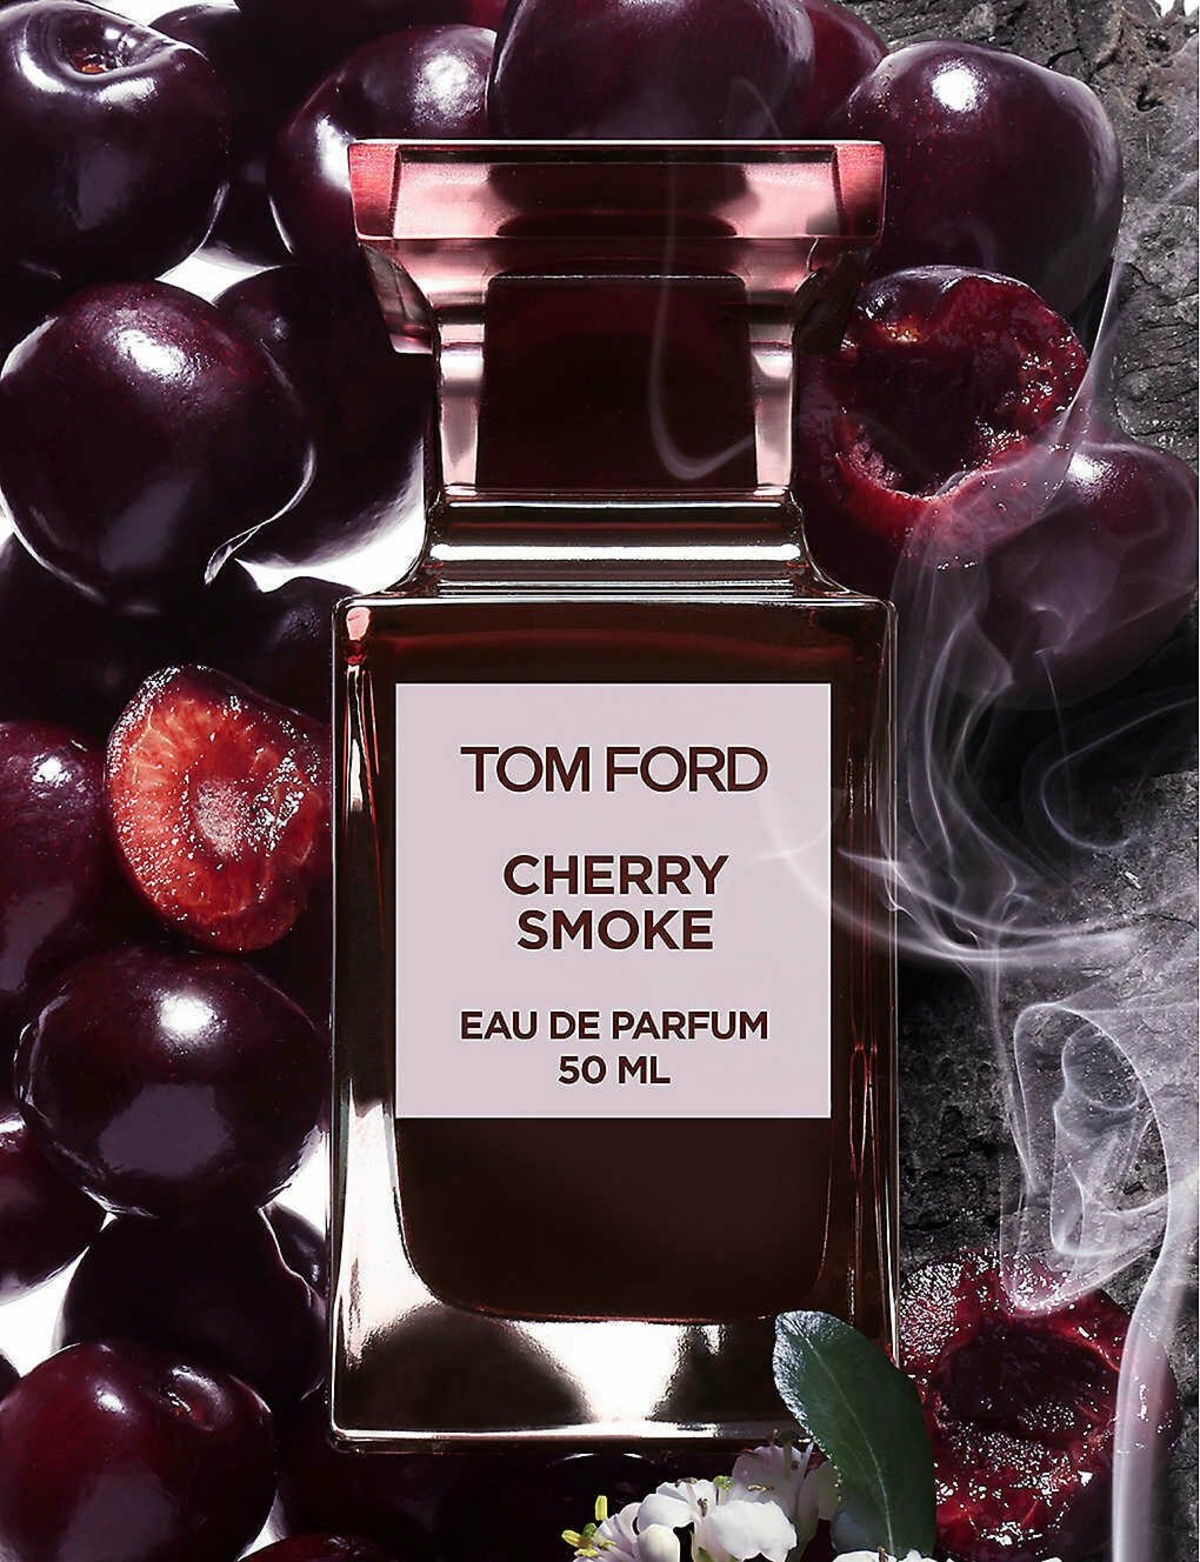 https://www.parfumo.net/Perfumes/Tom_Ford/cherry-smoke